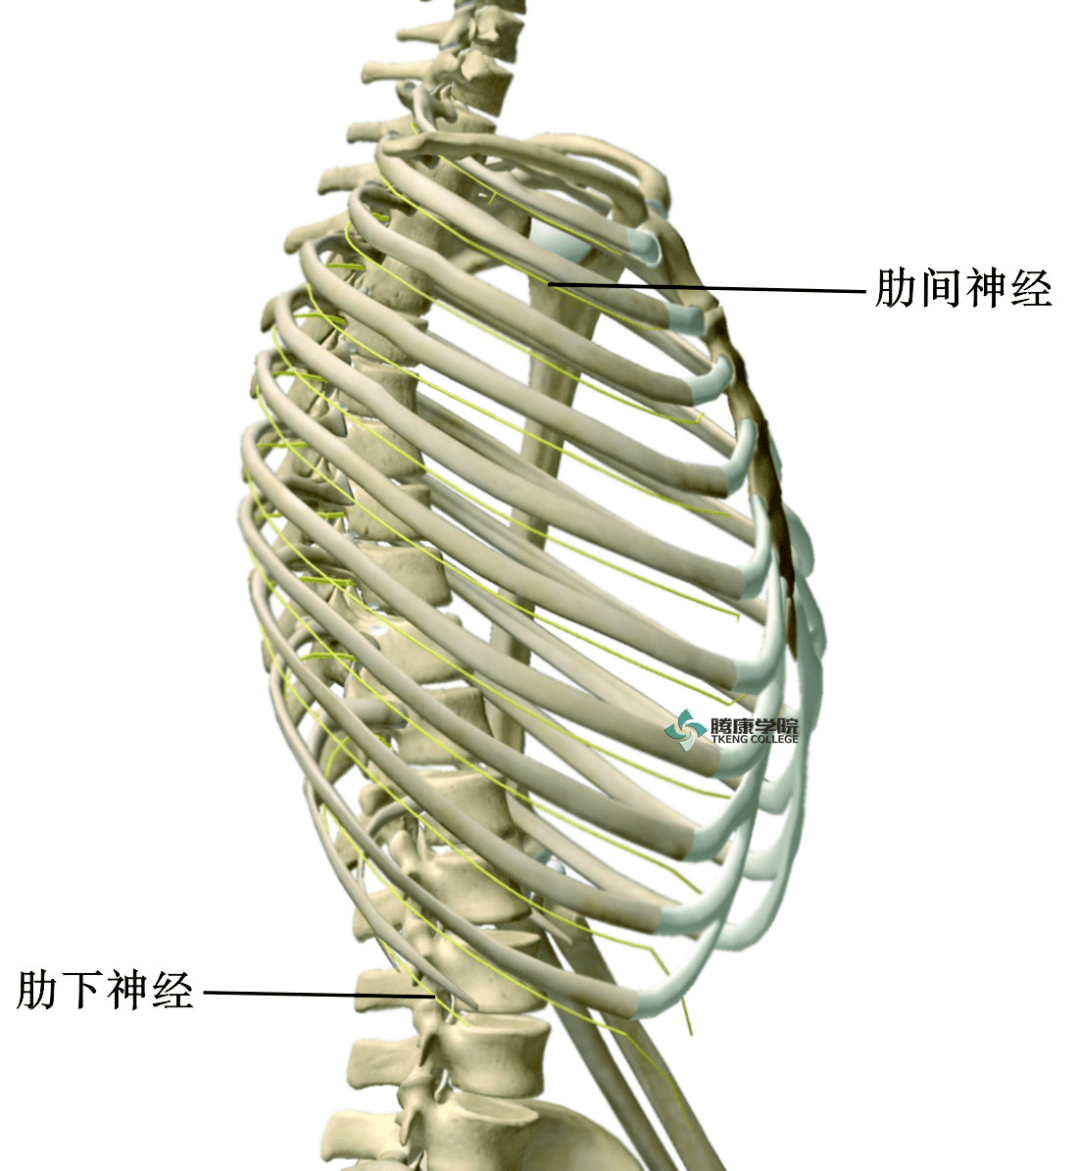 郑大解剖学 腾康学院 胸神经功能评估 解剖 胸神经包含由脊髓分支出